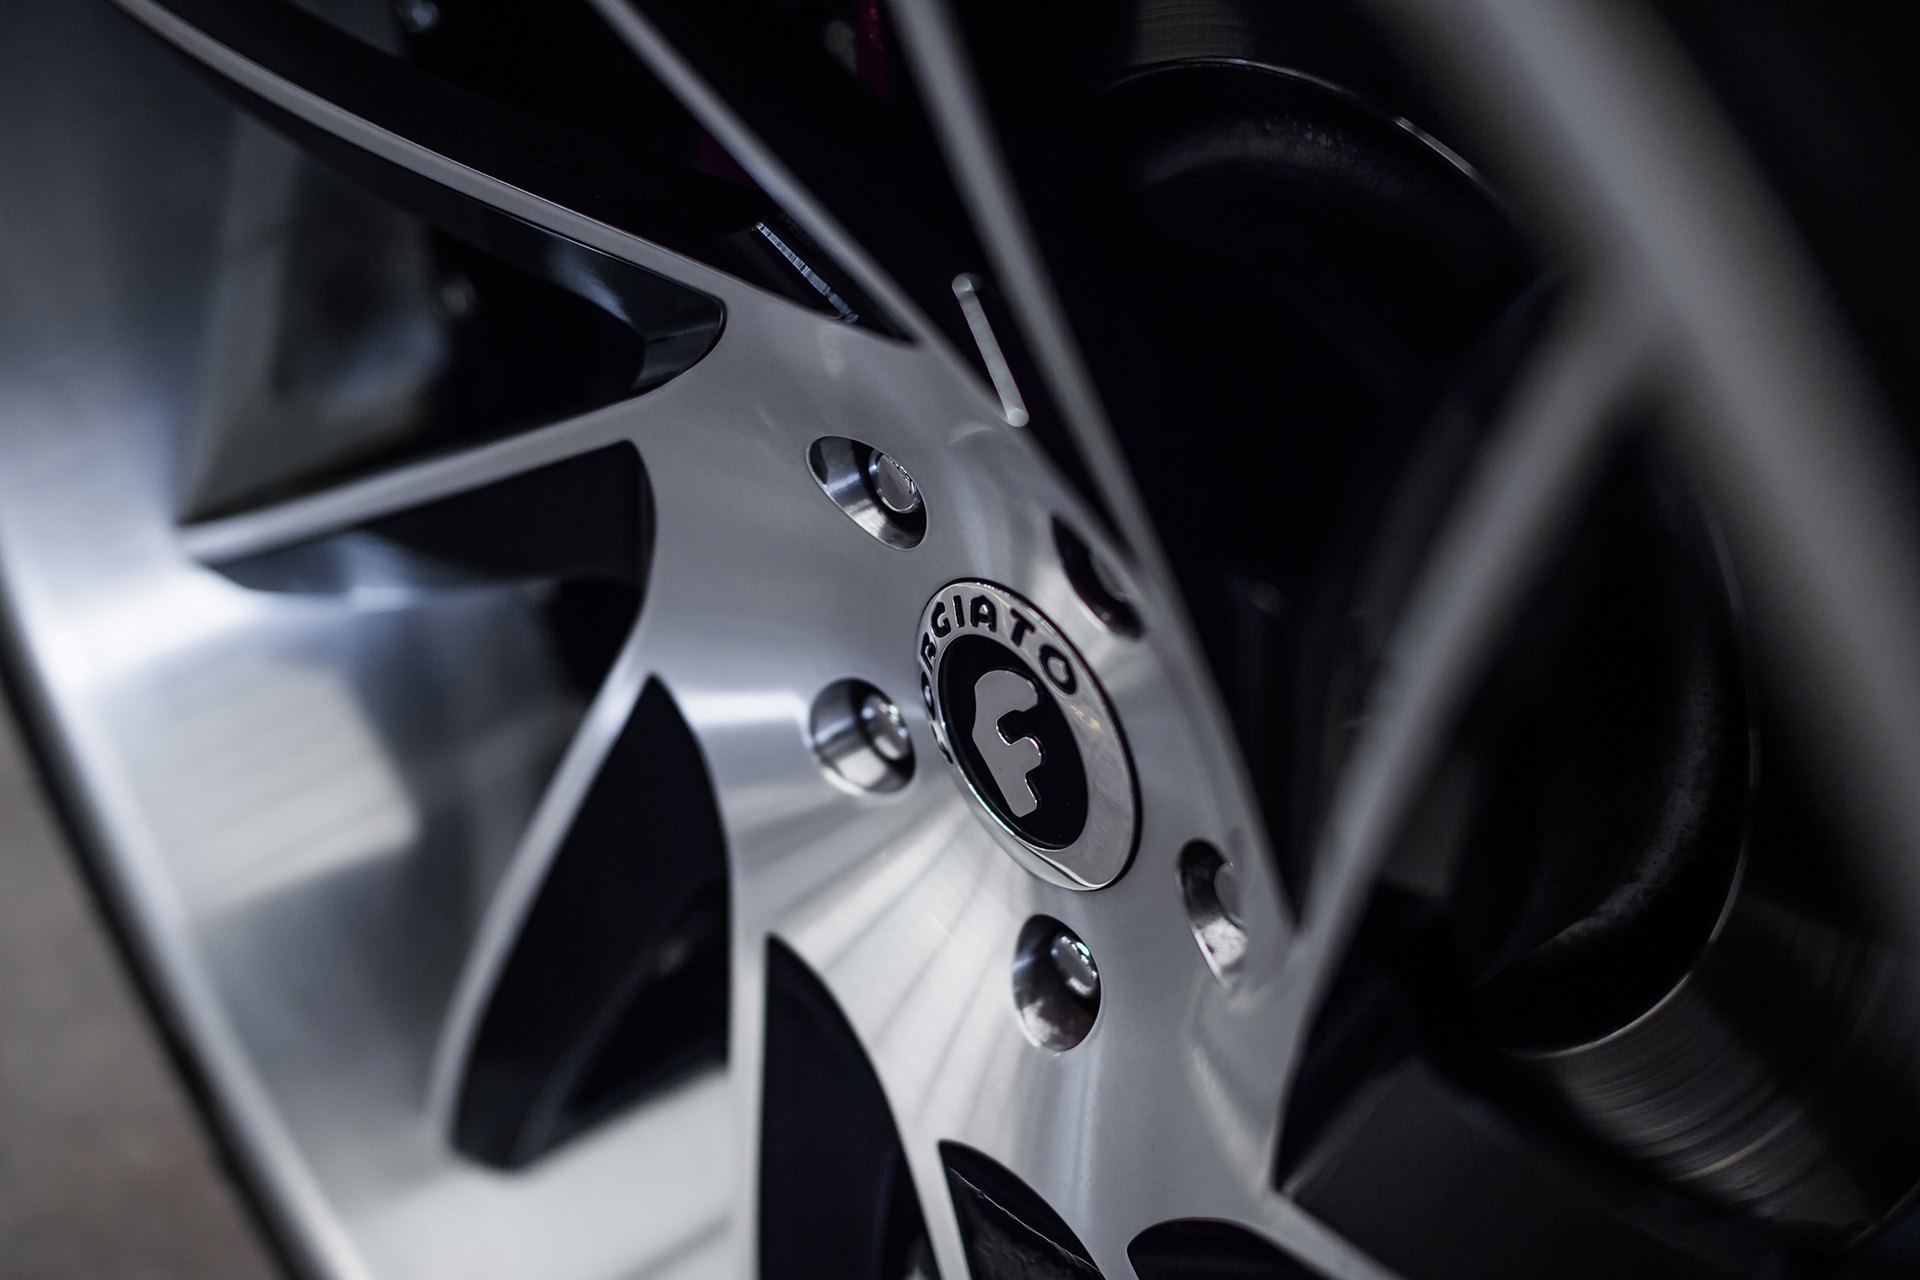 Chrome Forgiato Wheels on Gray Range Rover Sport - Photo by Forgiato